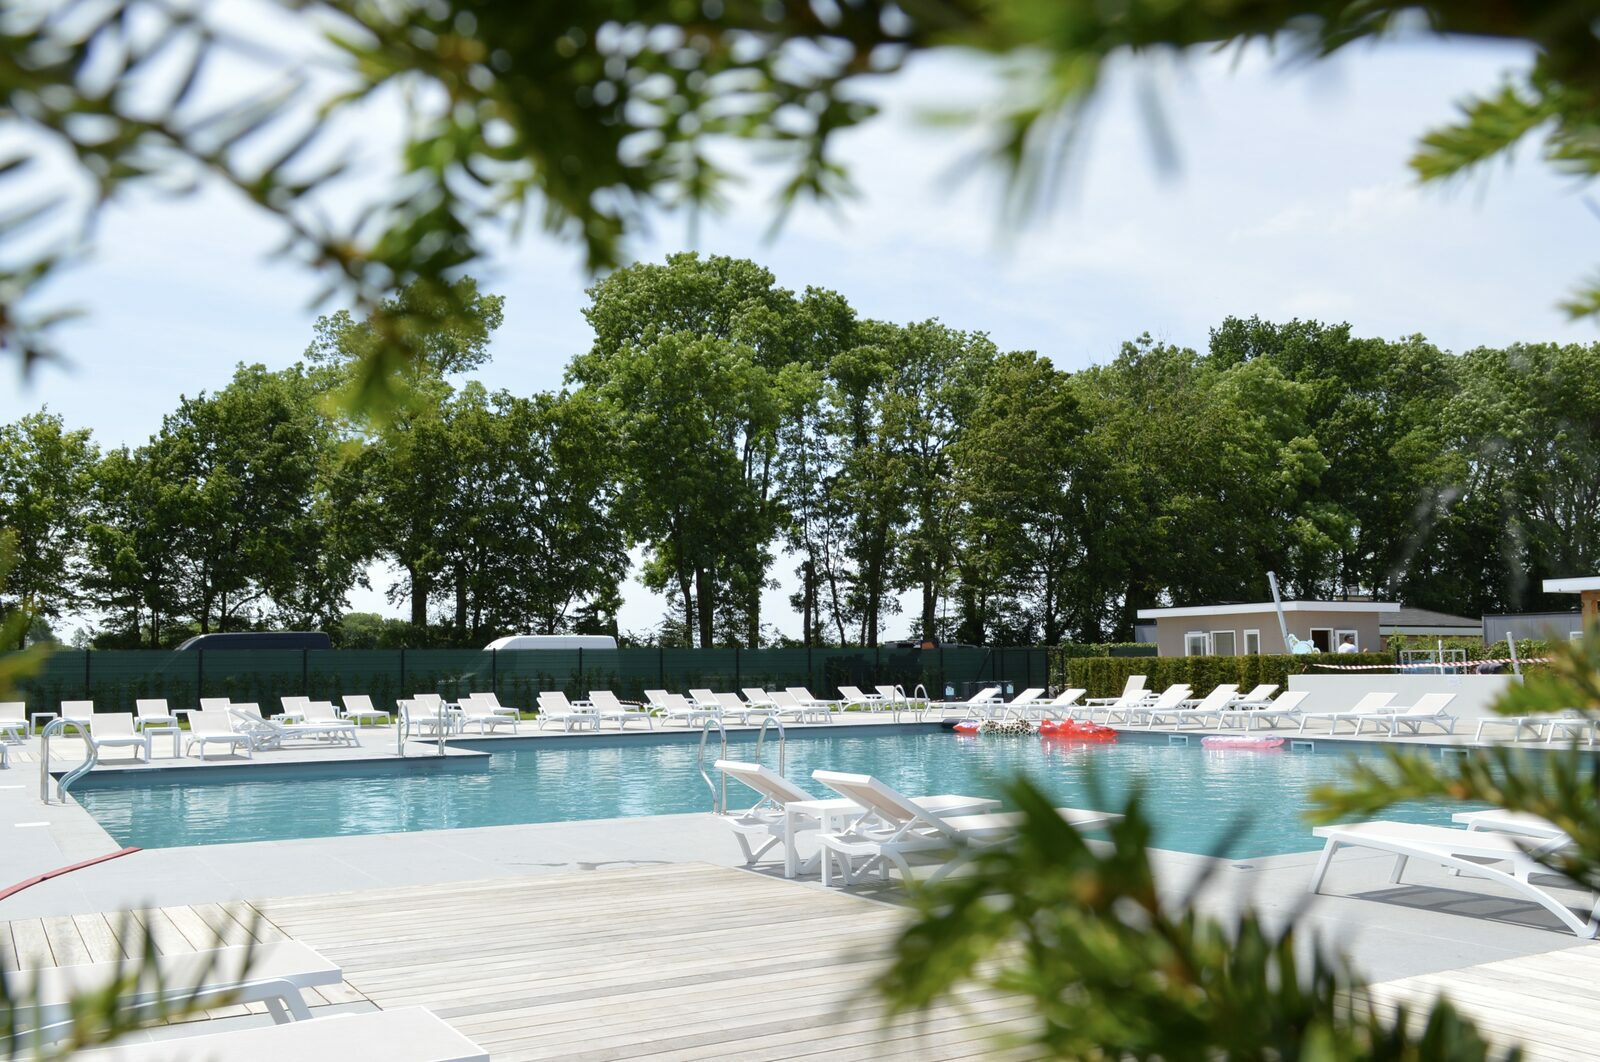 Parc de vacances situé dans le Limbourg et comportant une piscine